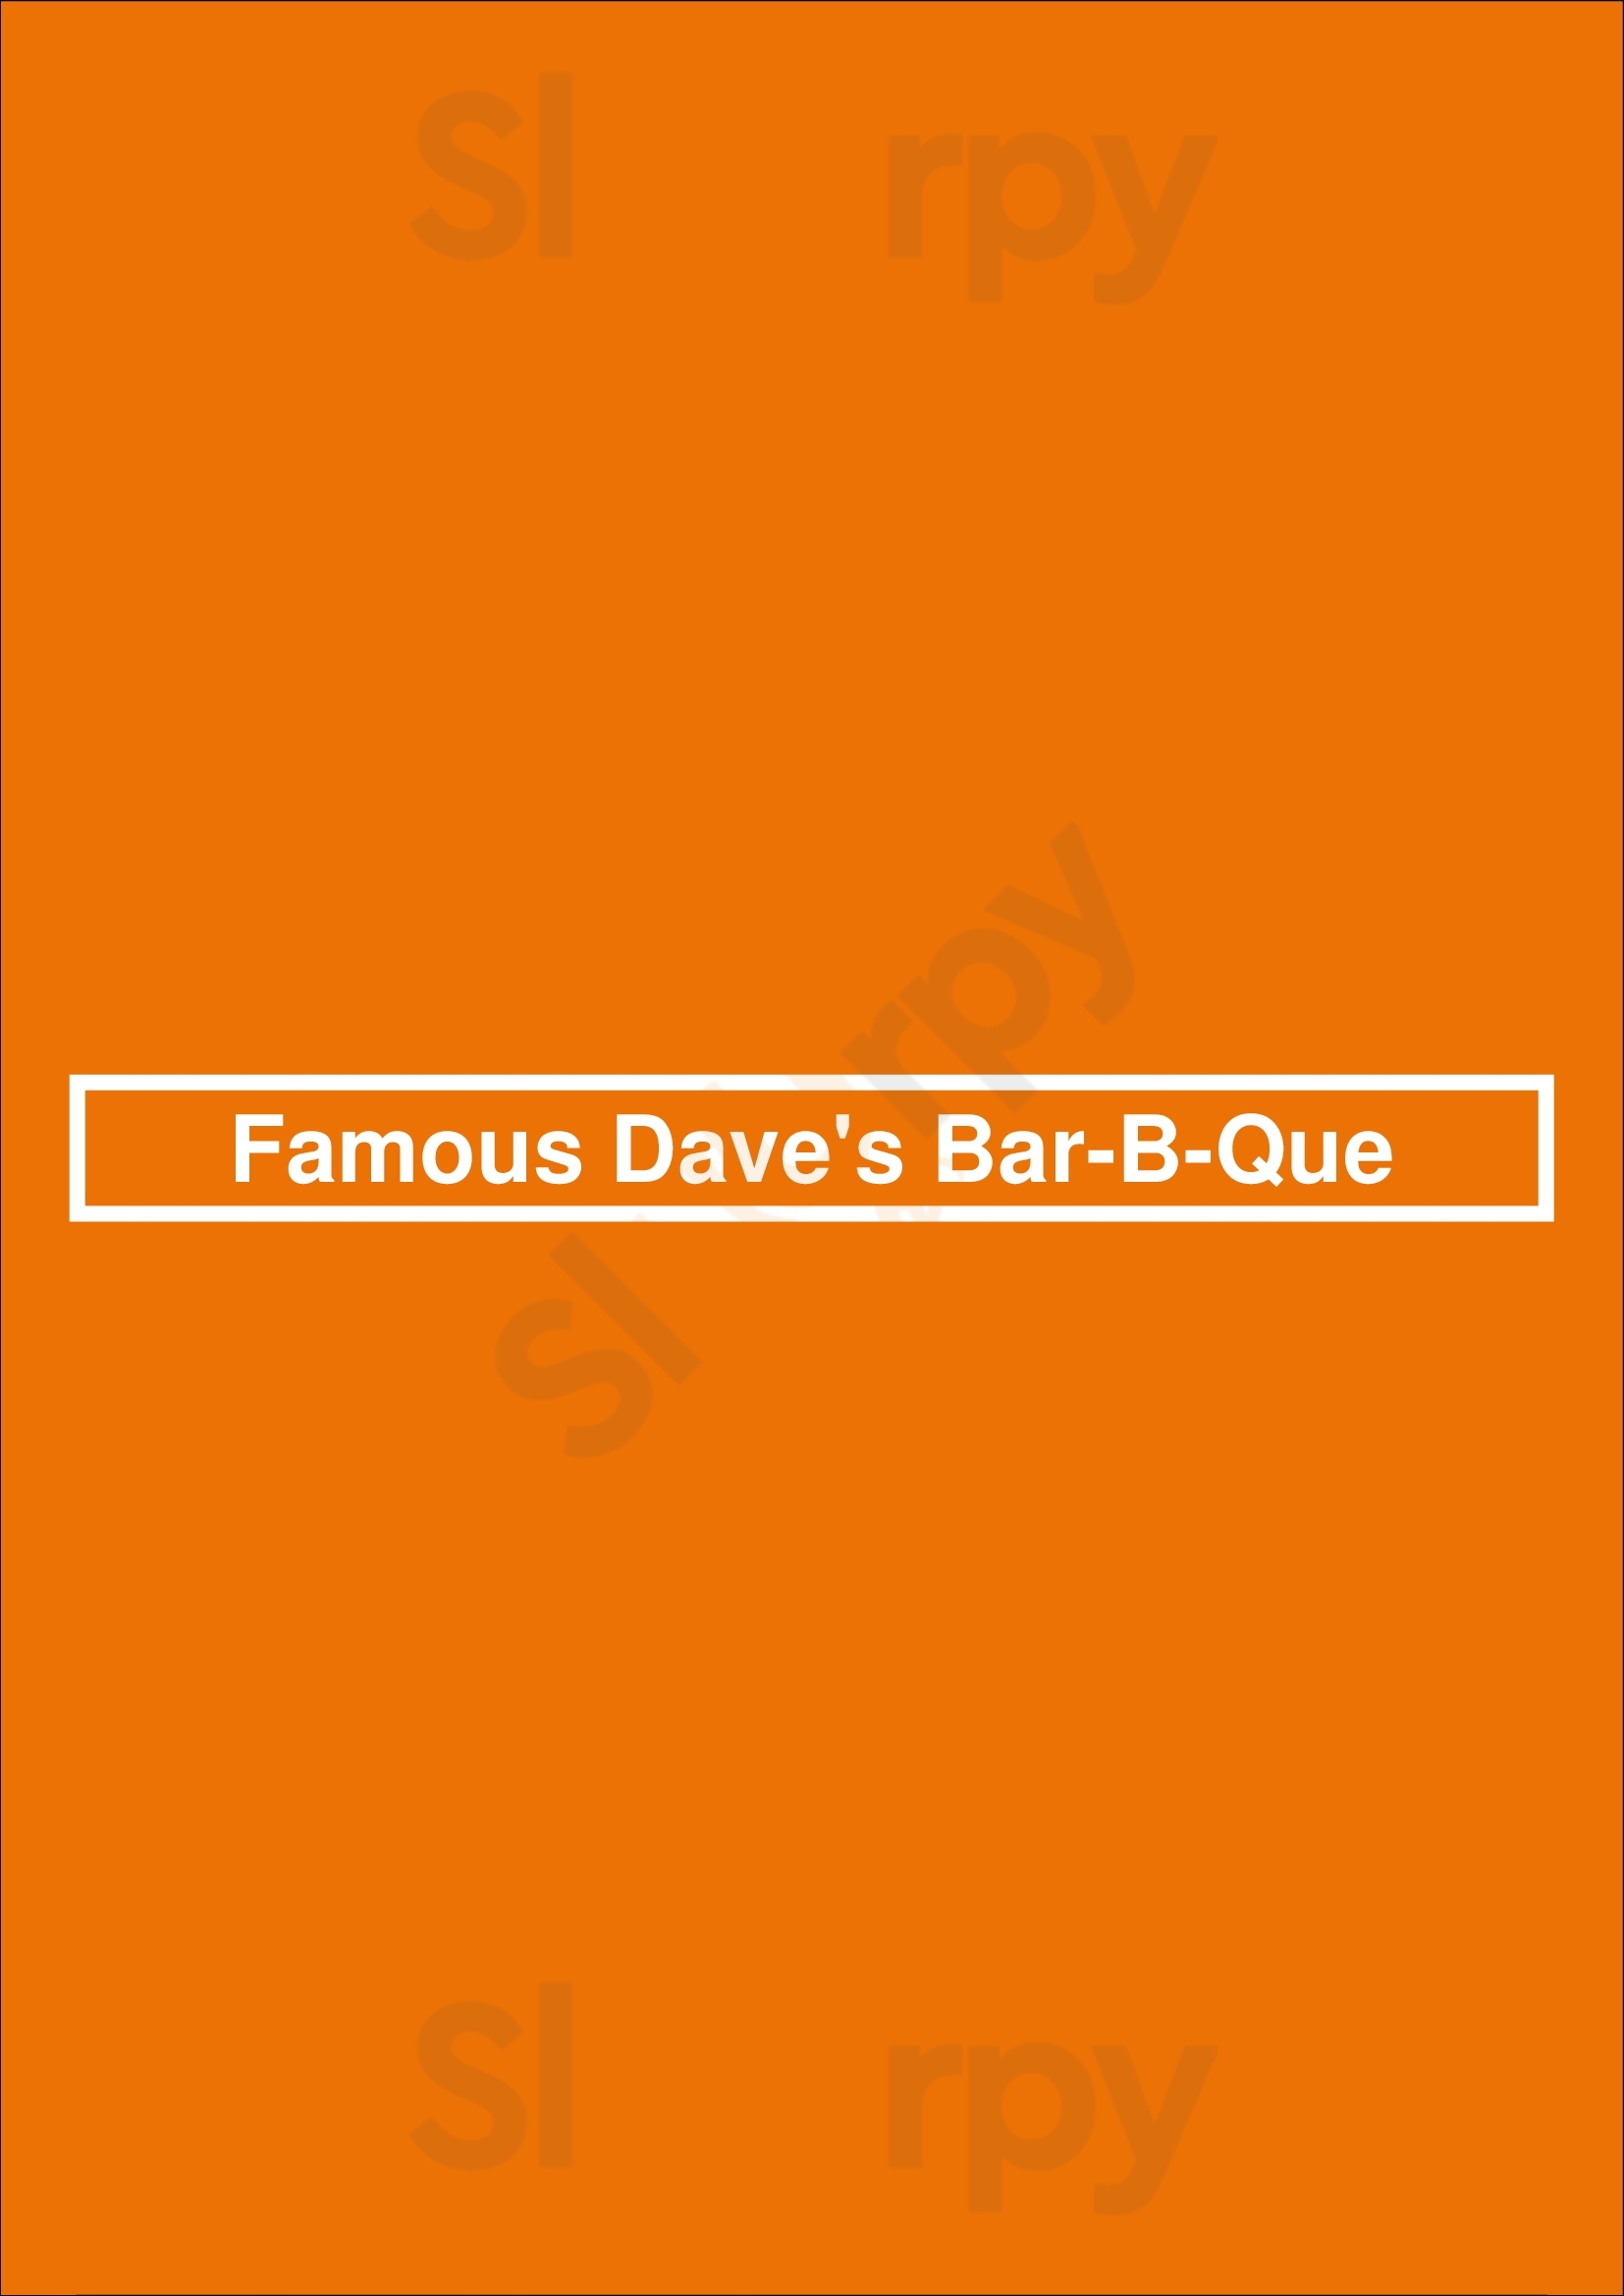 Famous Dave's Bar-b-que El Paso Menu - 1